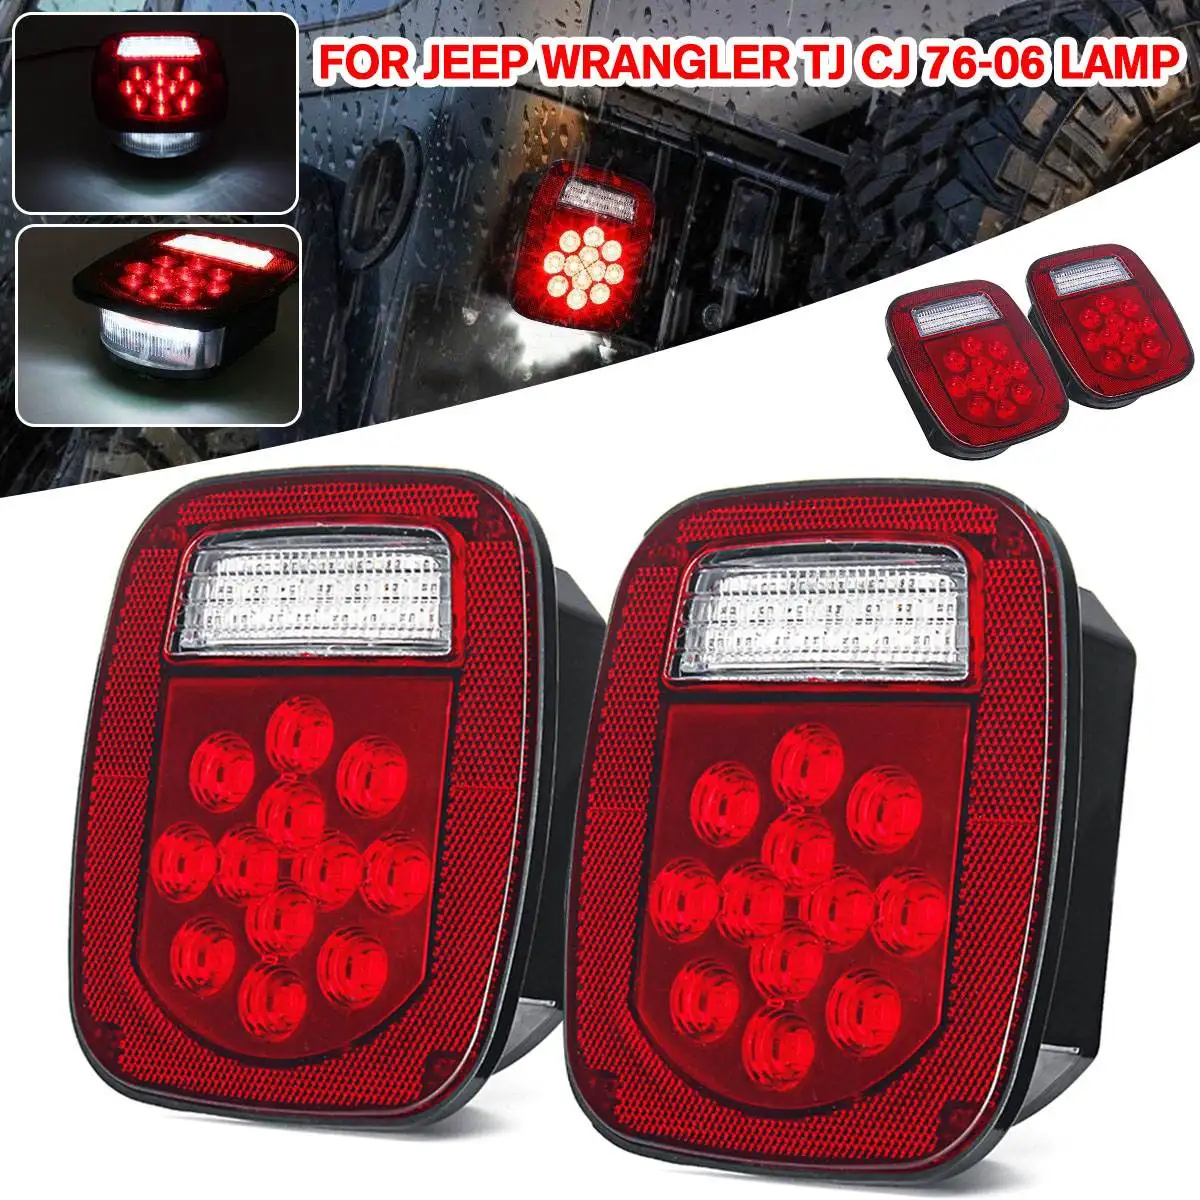 

2 Pcs LED Car Stop Rear Light Warning Lights Reverse Running Lamp for Truck/Trailer/Boat for Jeep for Wrangler TJ CJ 76-06